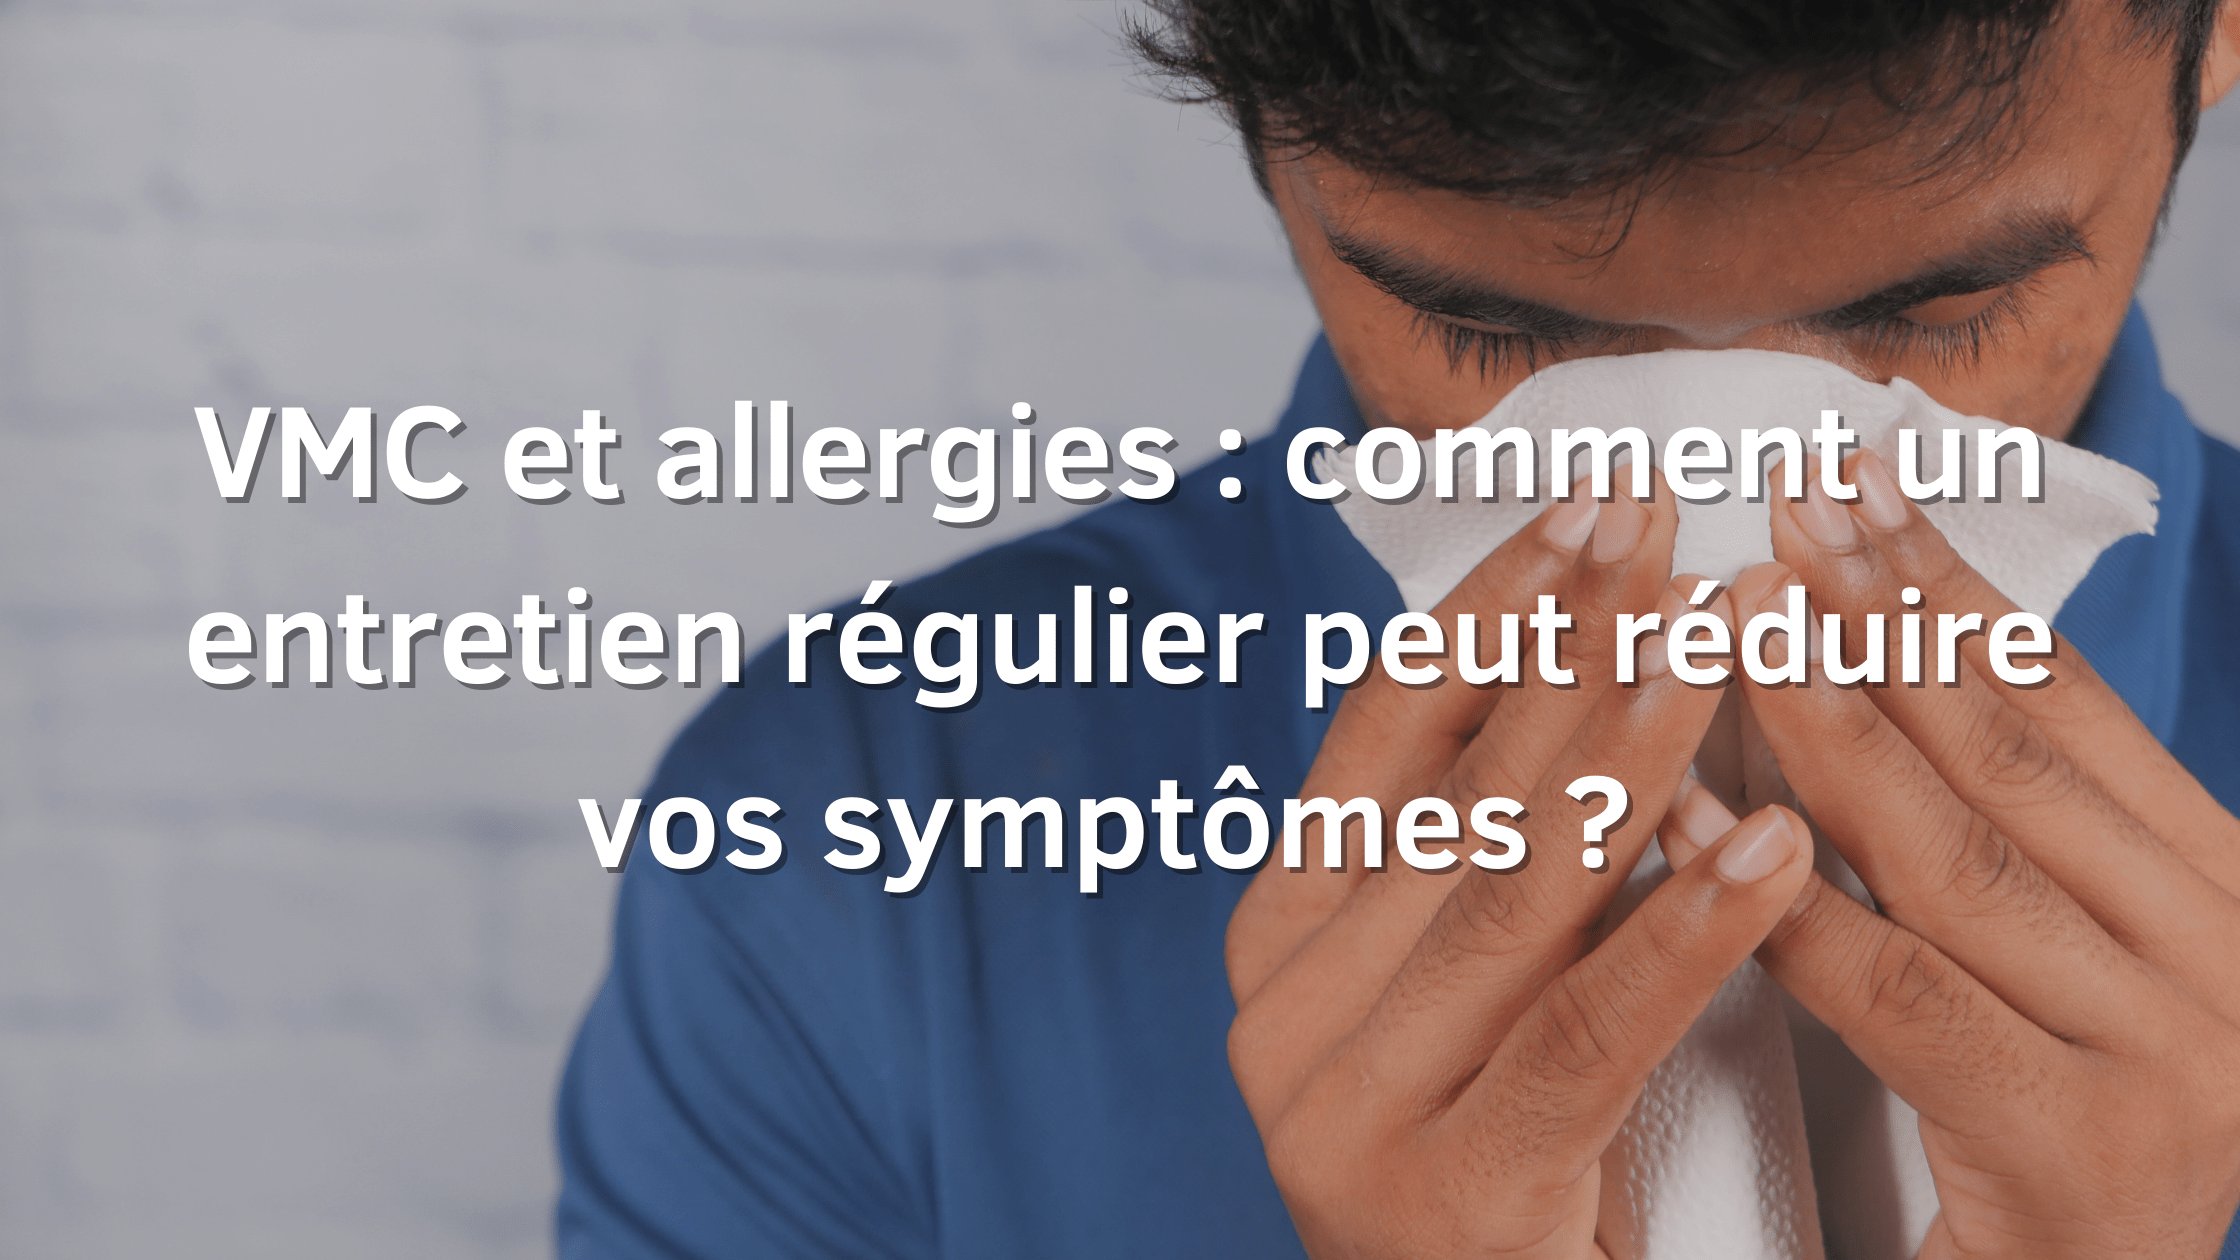 VMC et allergie